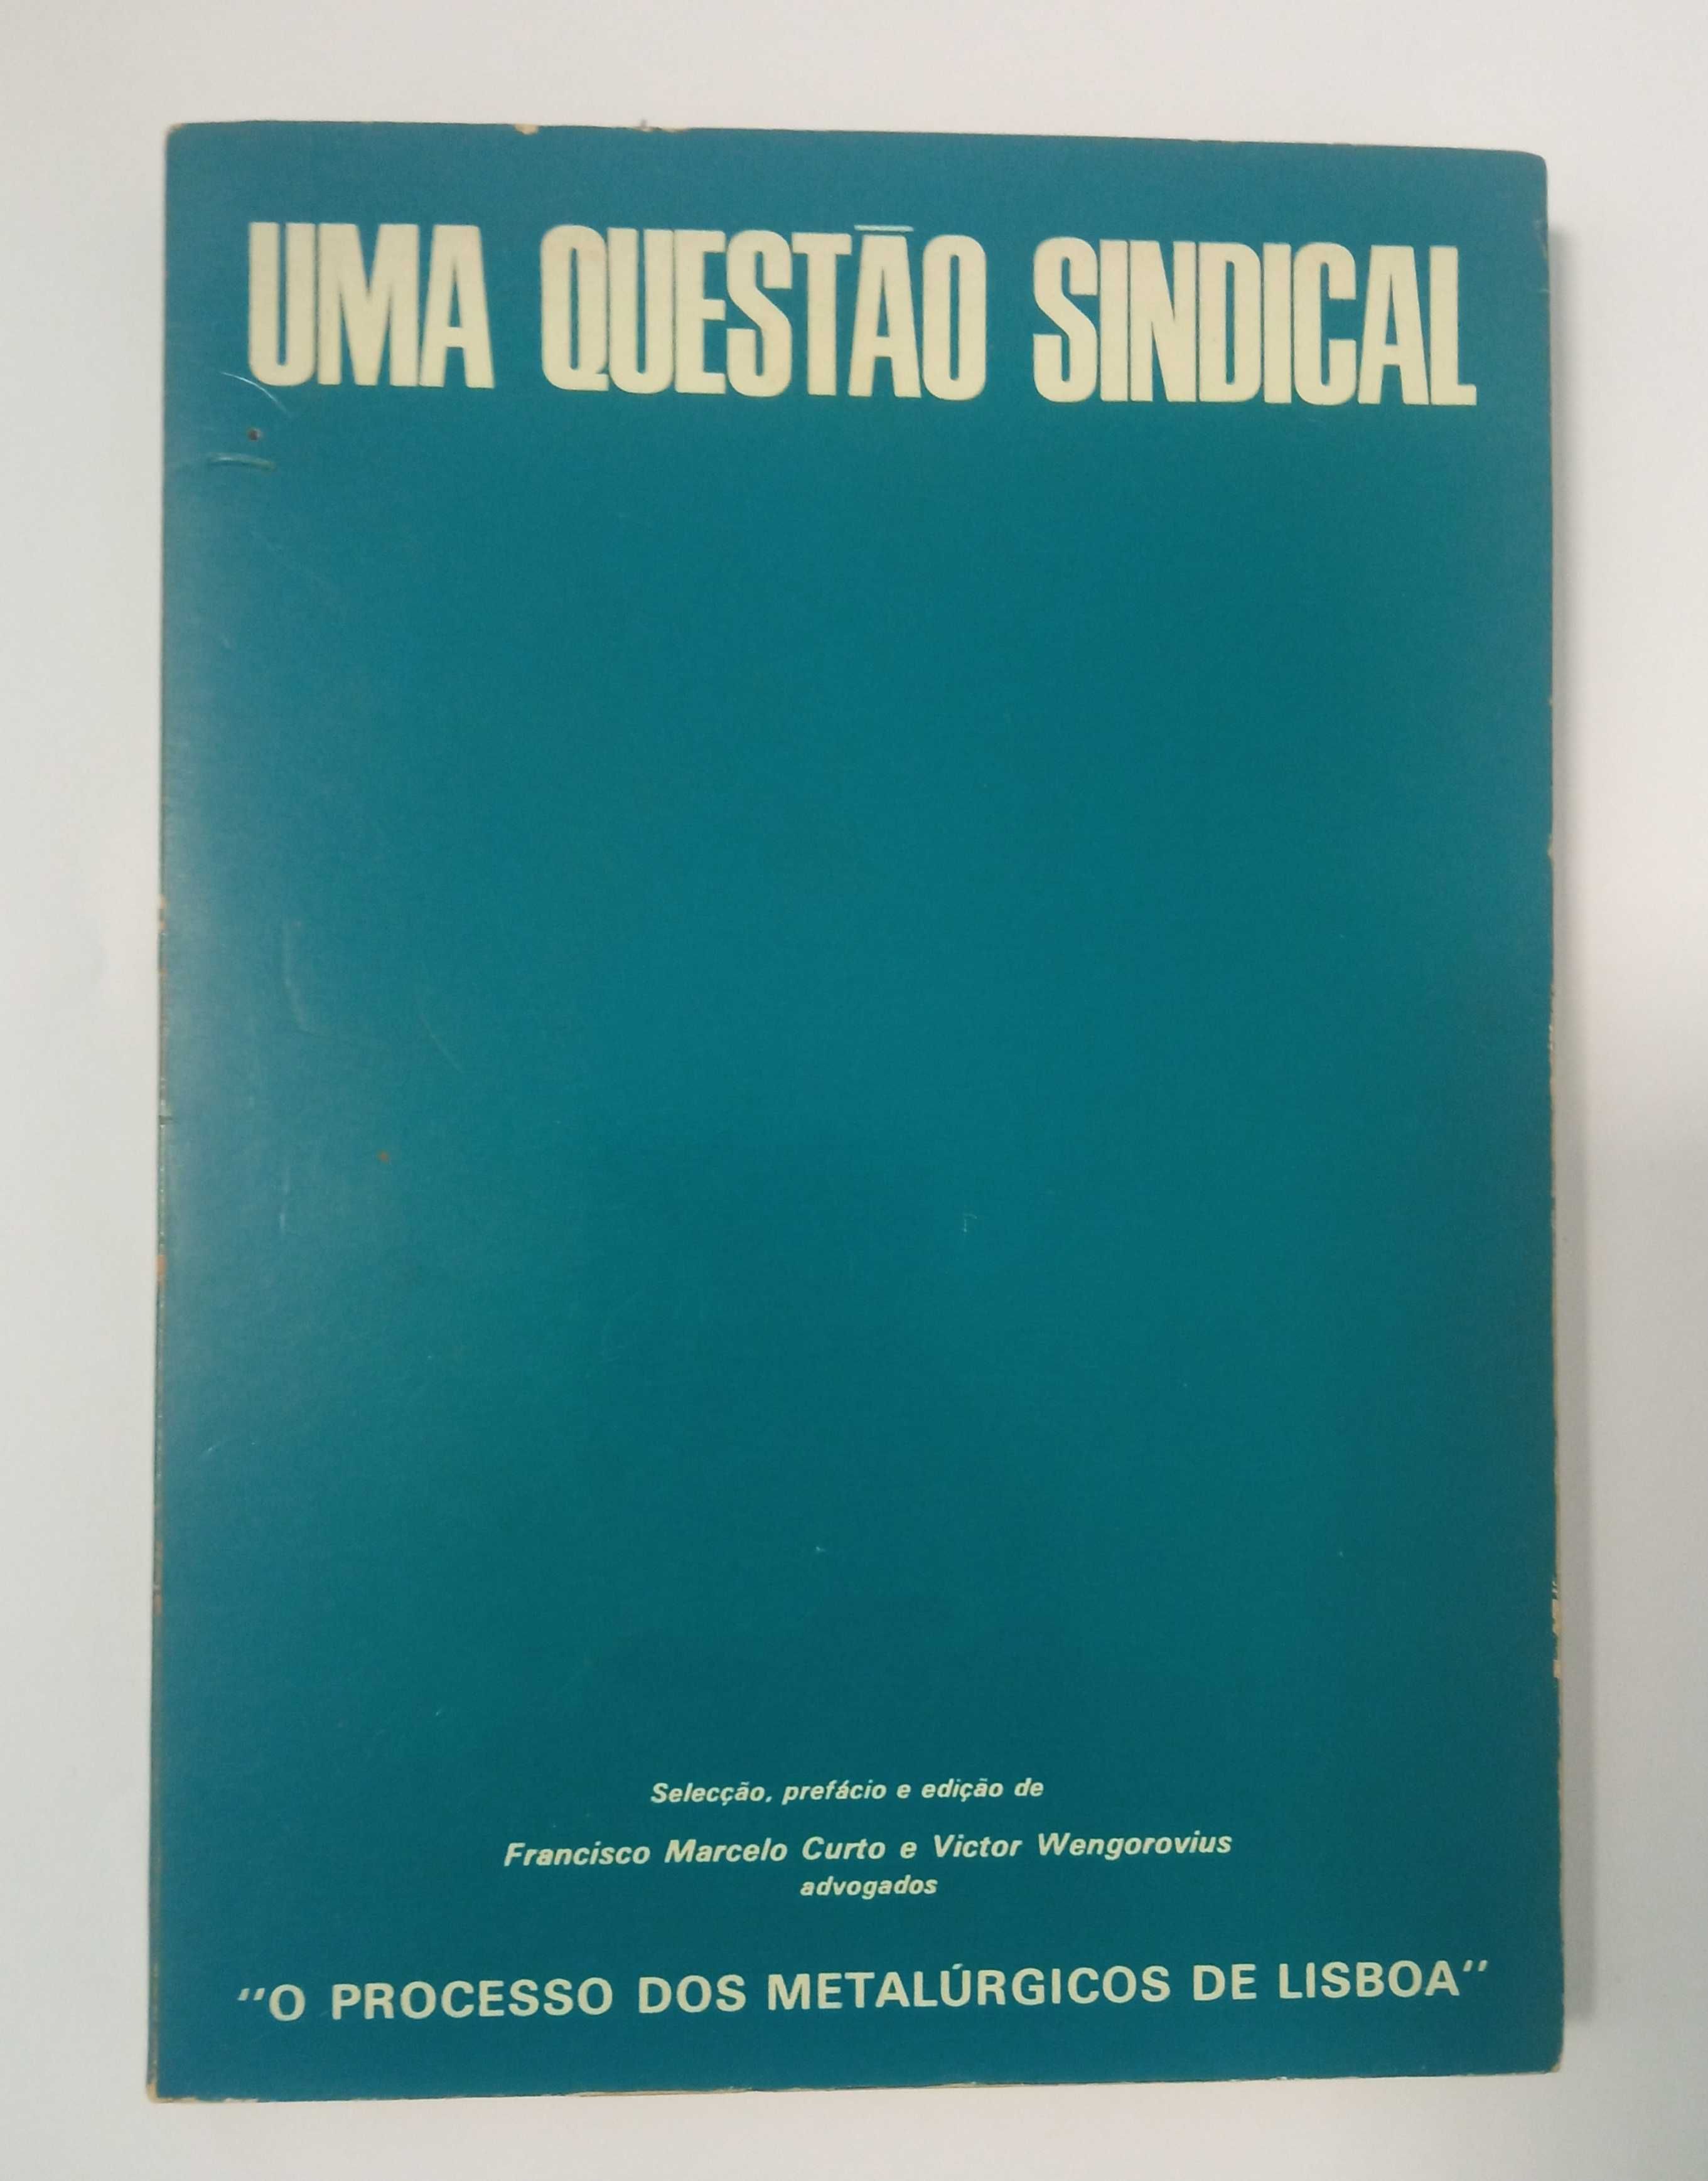 Uma questão sindical, de Francisco Marcelo Curto e Victor Wengorovius